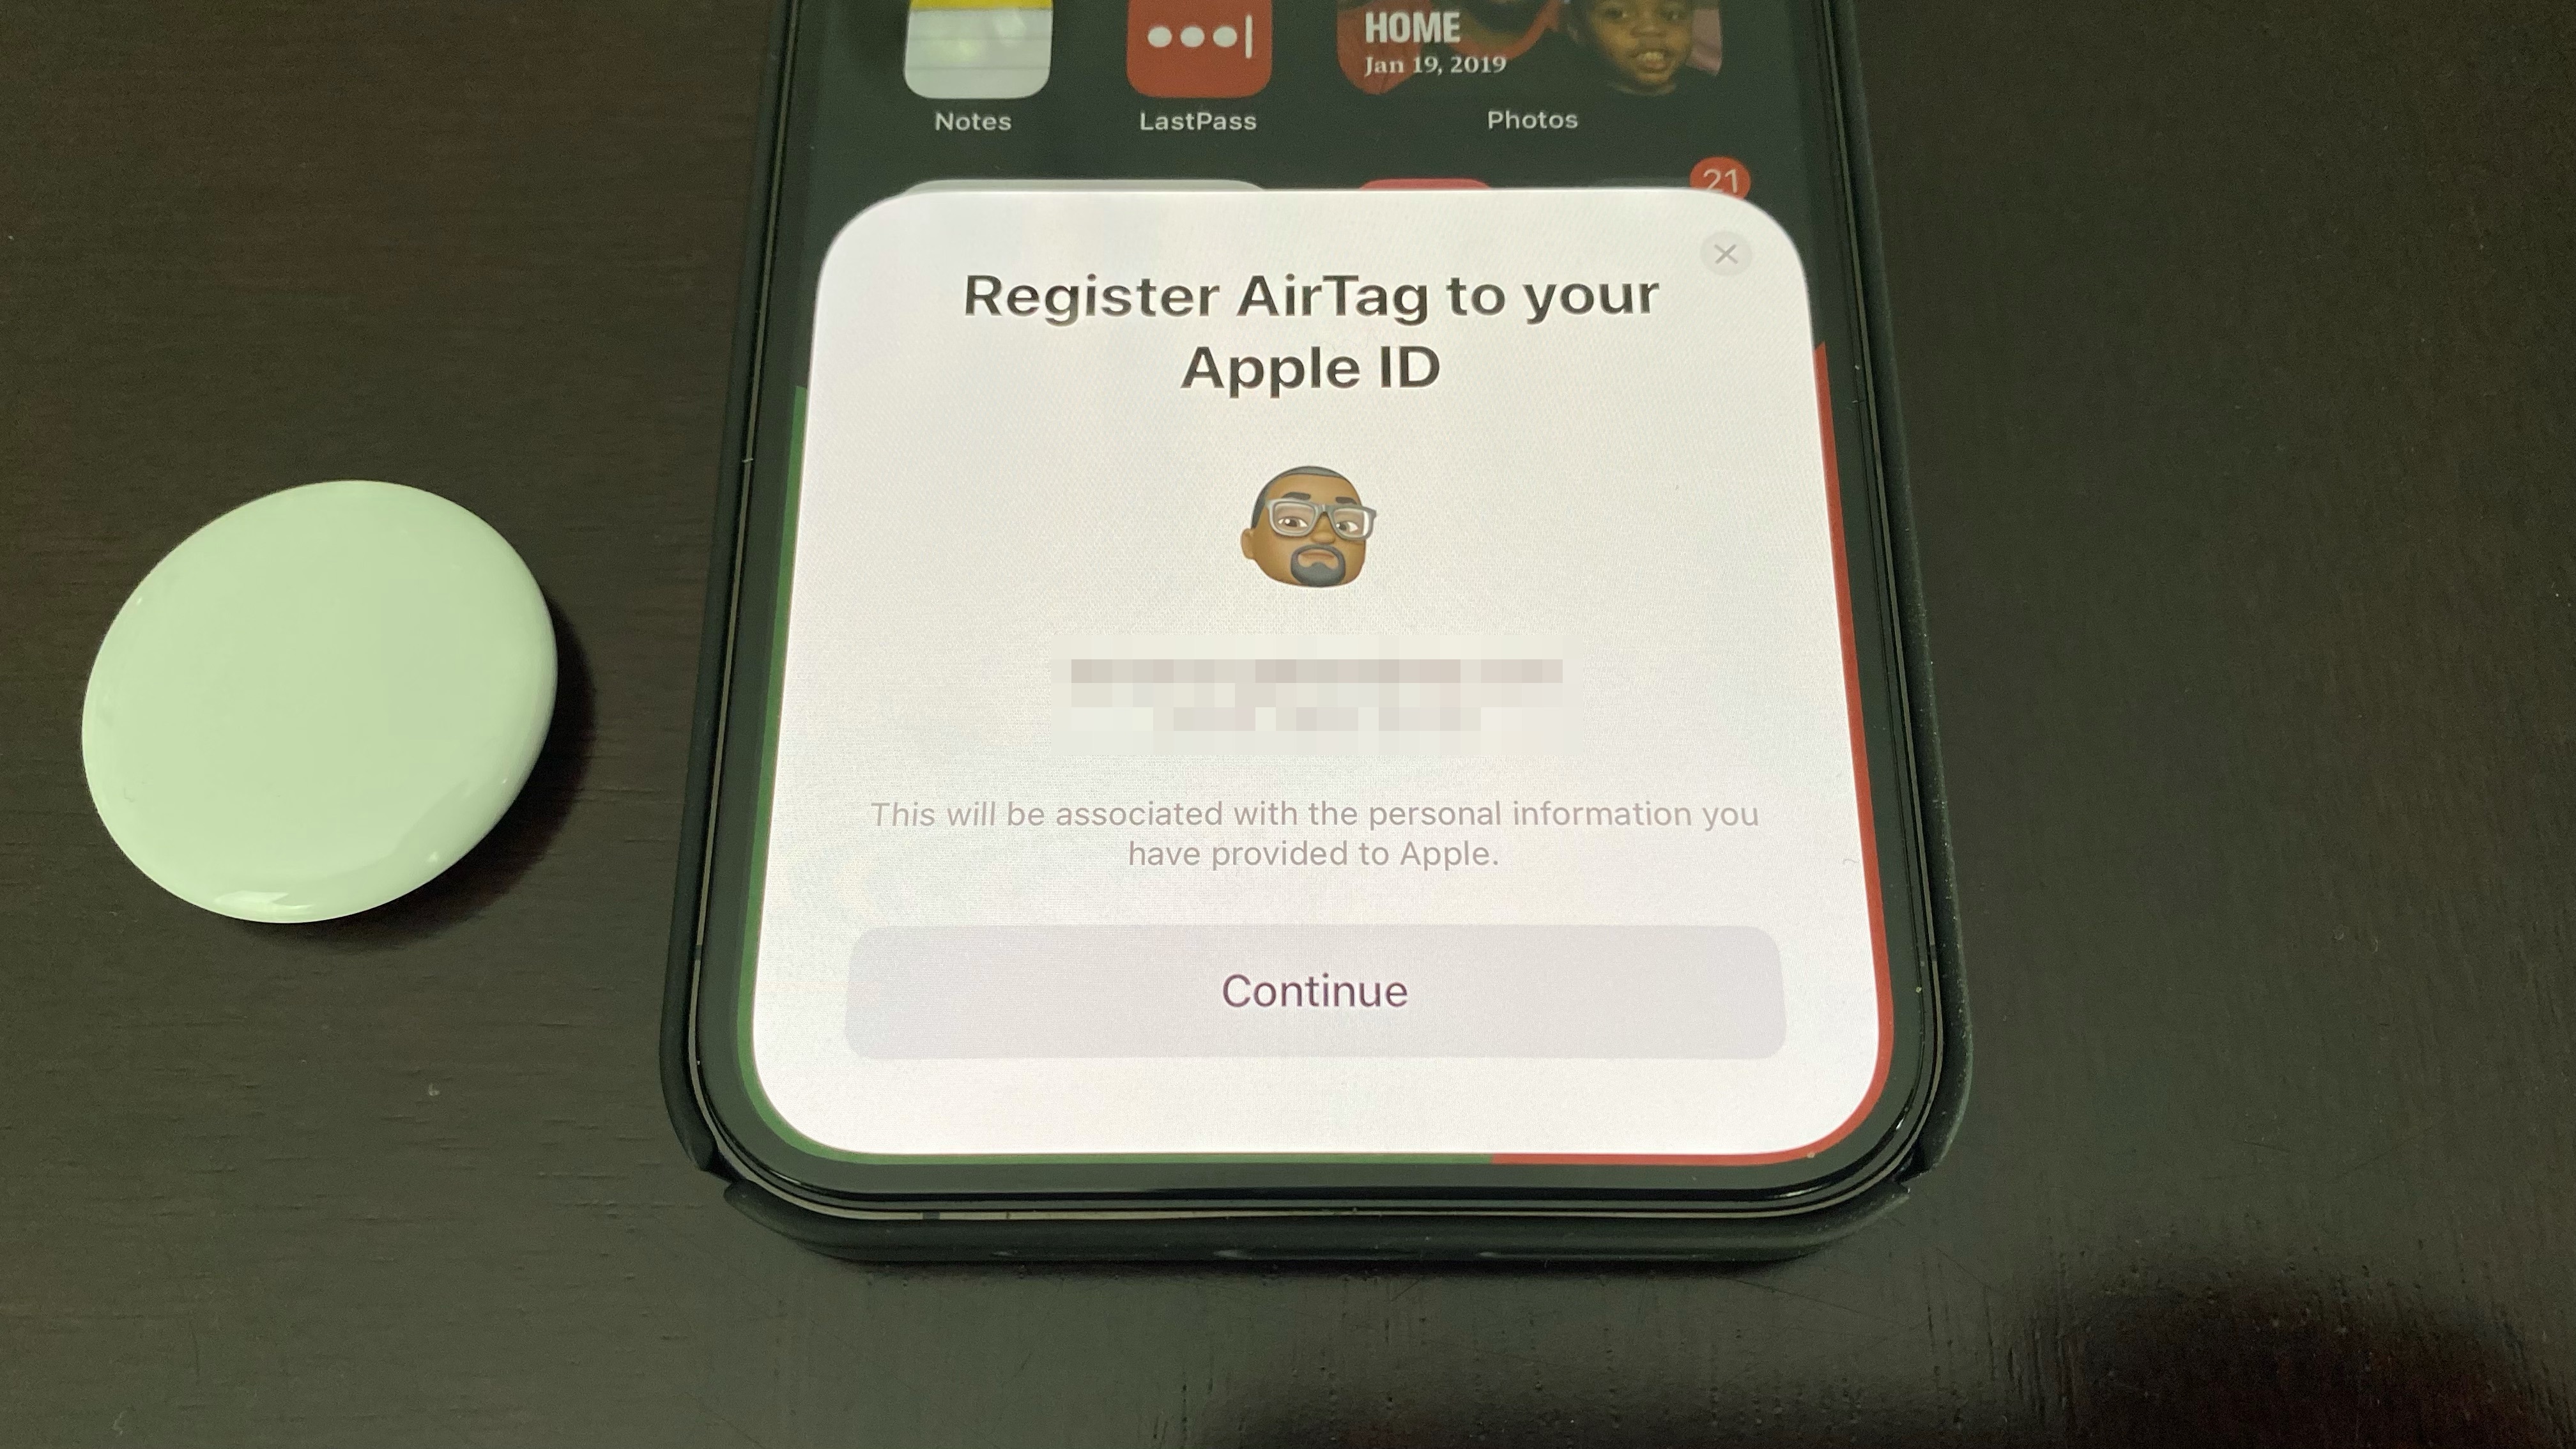 Mensaje de registro de id y airtag de Apple que se muestra en el iphone